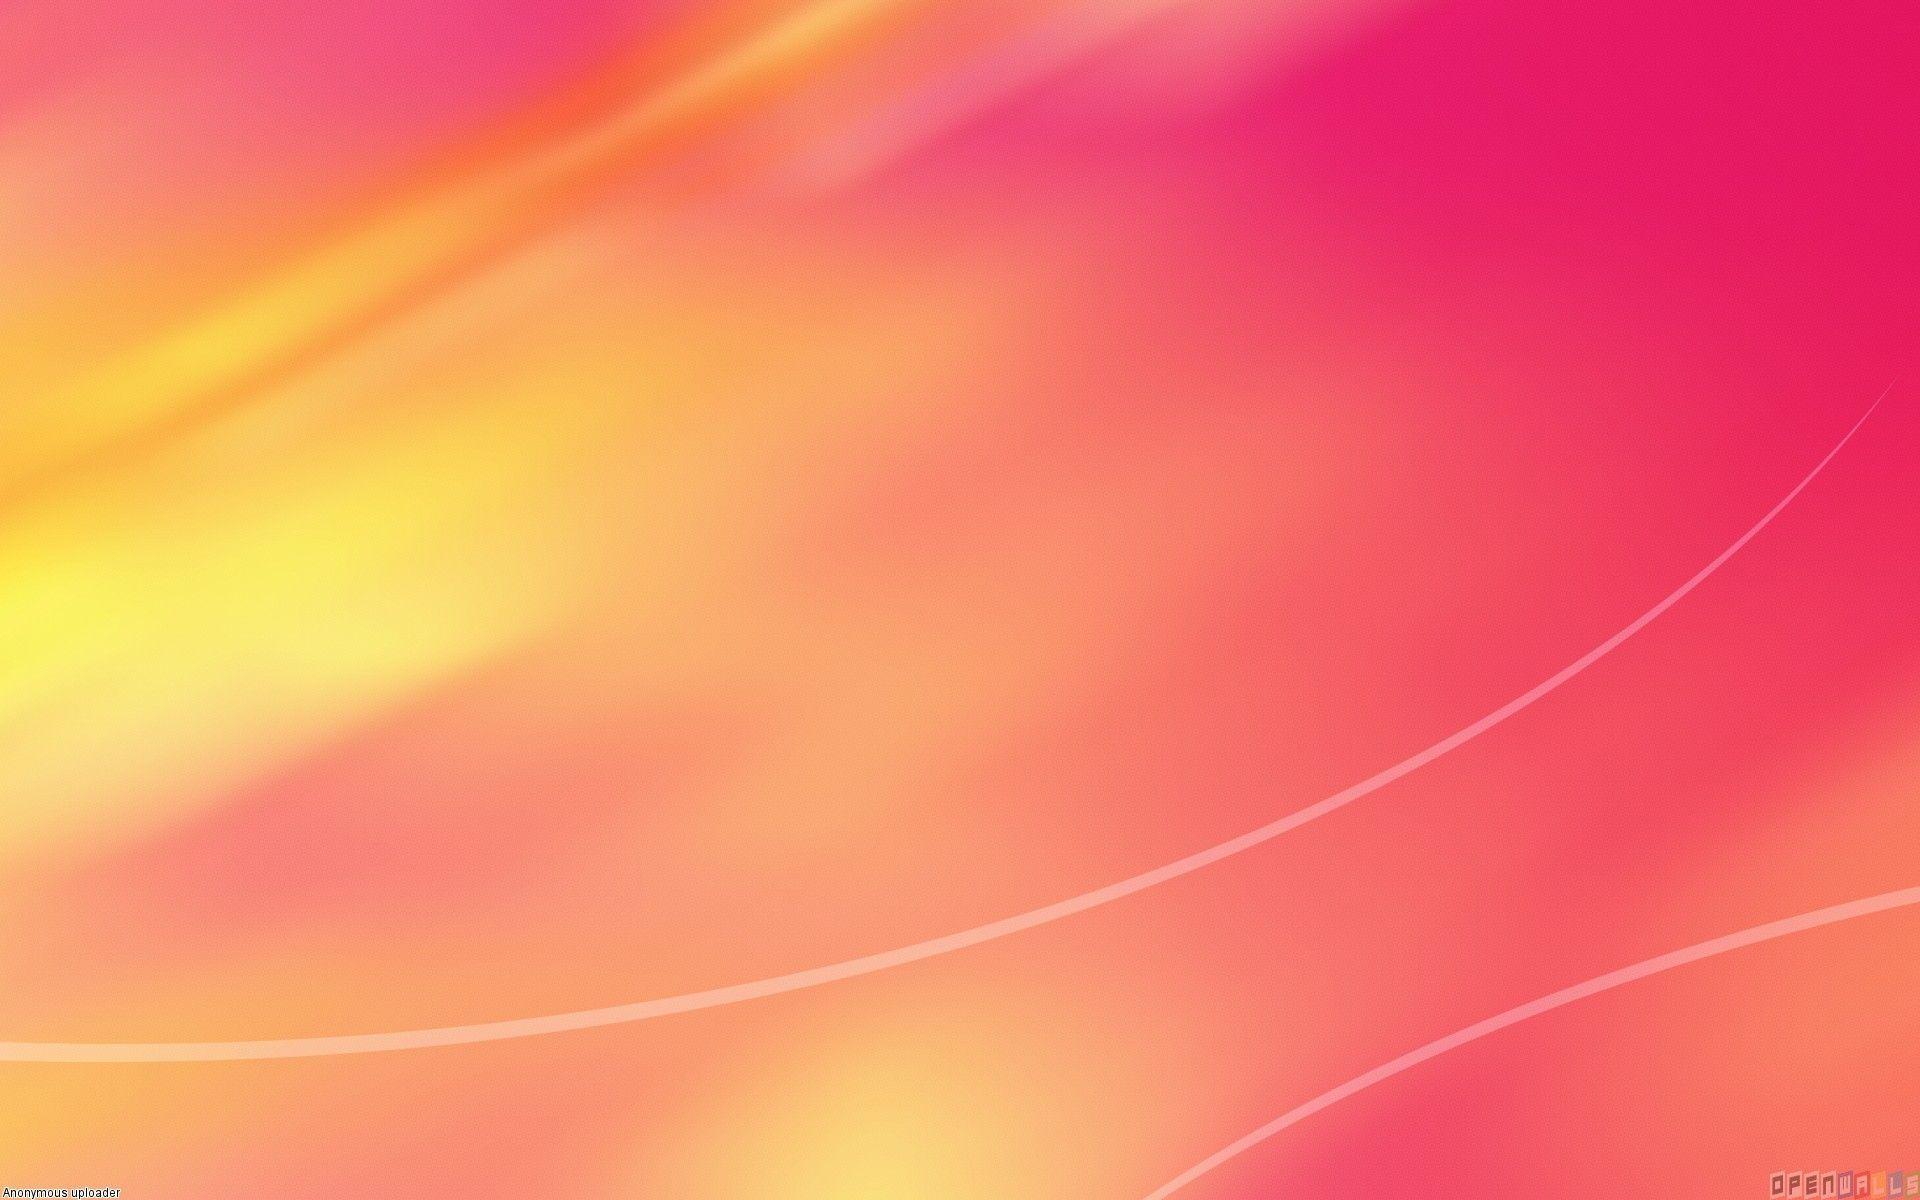 Bạn đang muốn cập nhật màn hình của mình? Hãy tải ngay những hình nền hồng cam miễn phí để tạo điểm nhấn độc đáo cho màn hình của bạn. Niềm vui đến từ những gam màu tươi sáng này chỉ nằm trong tầm tay bạn thôi.